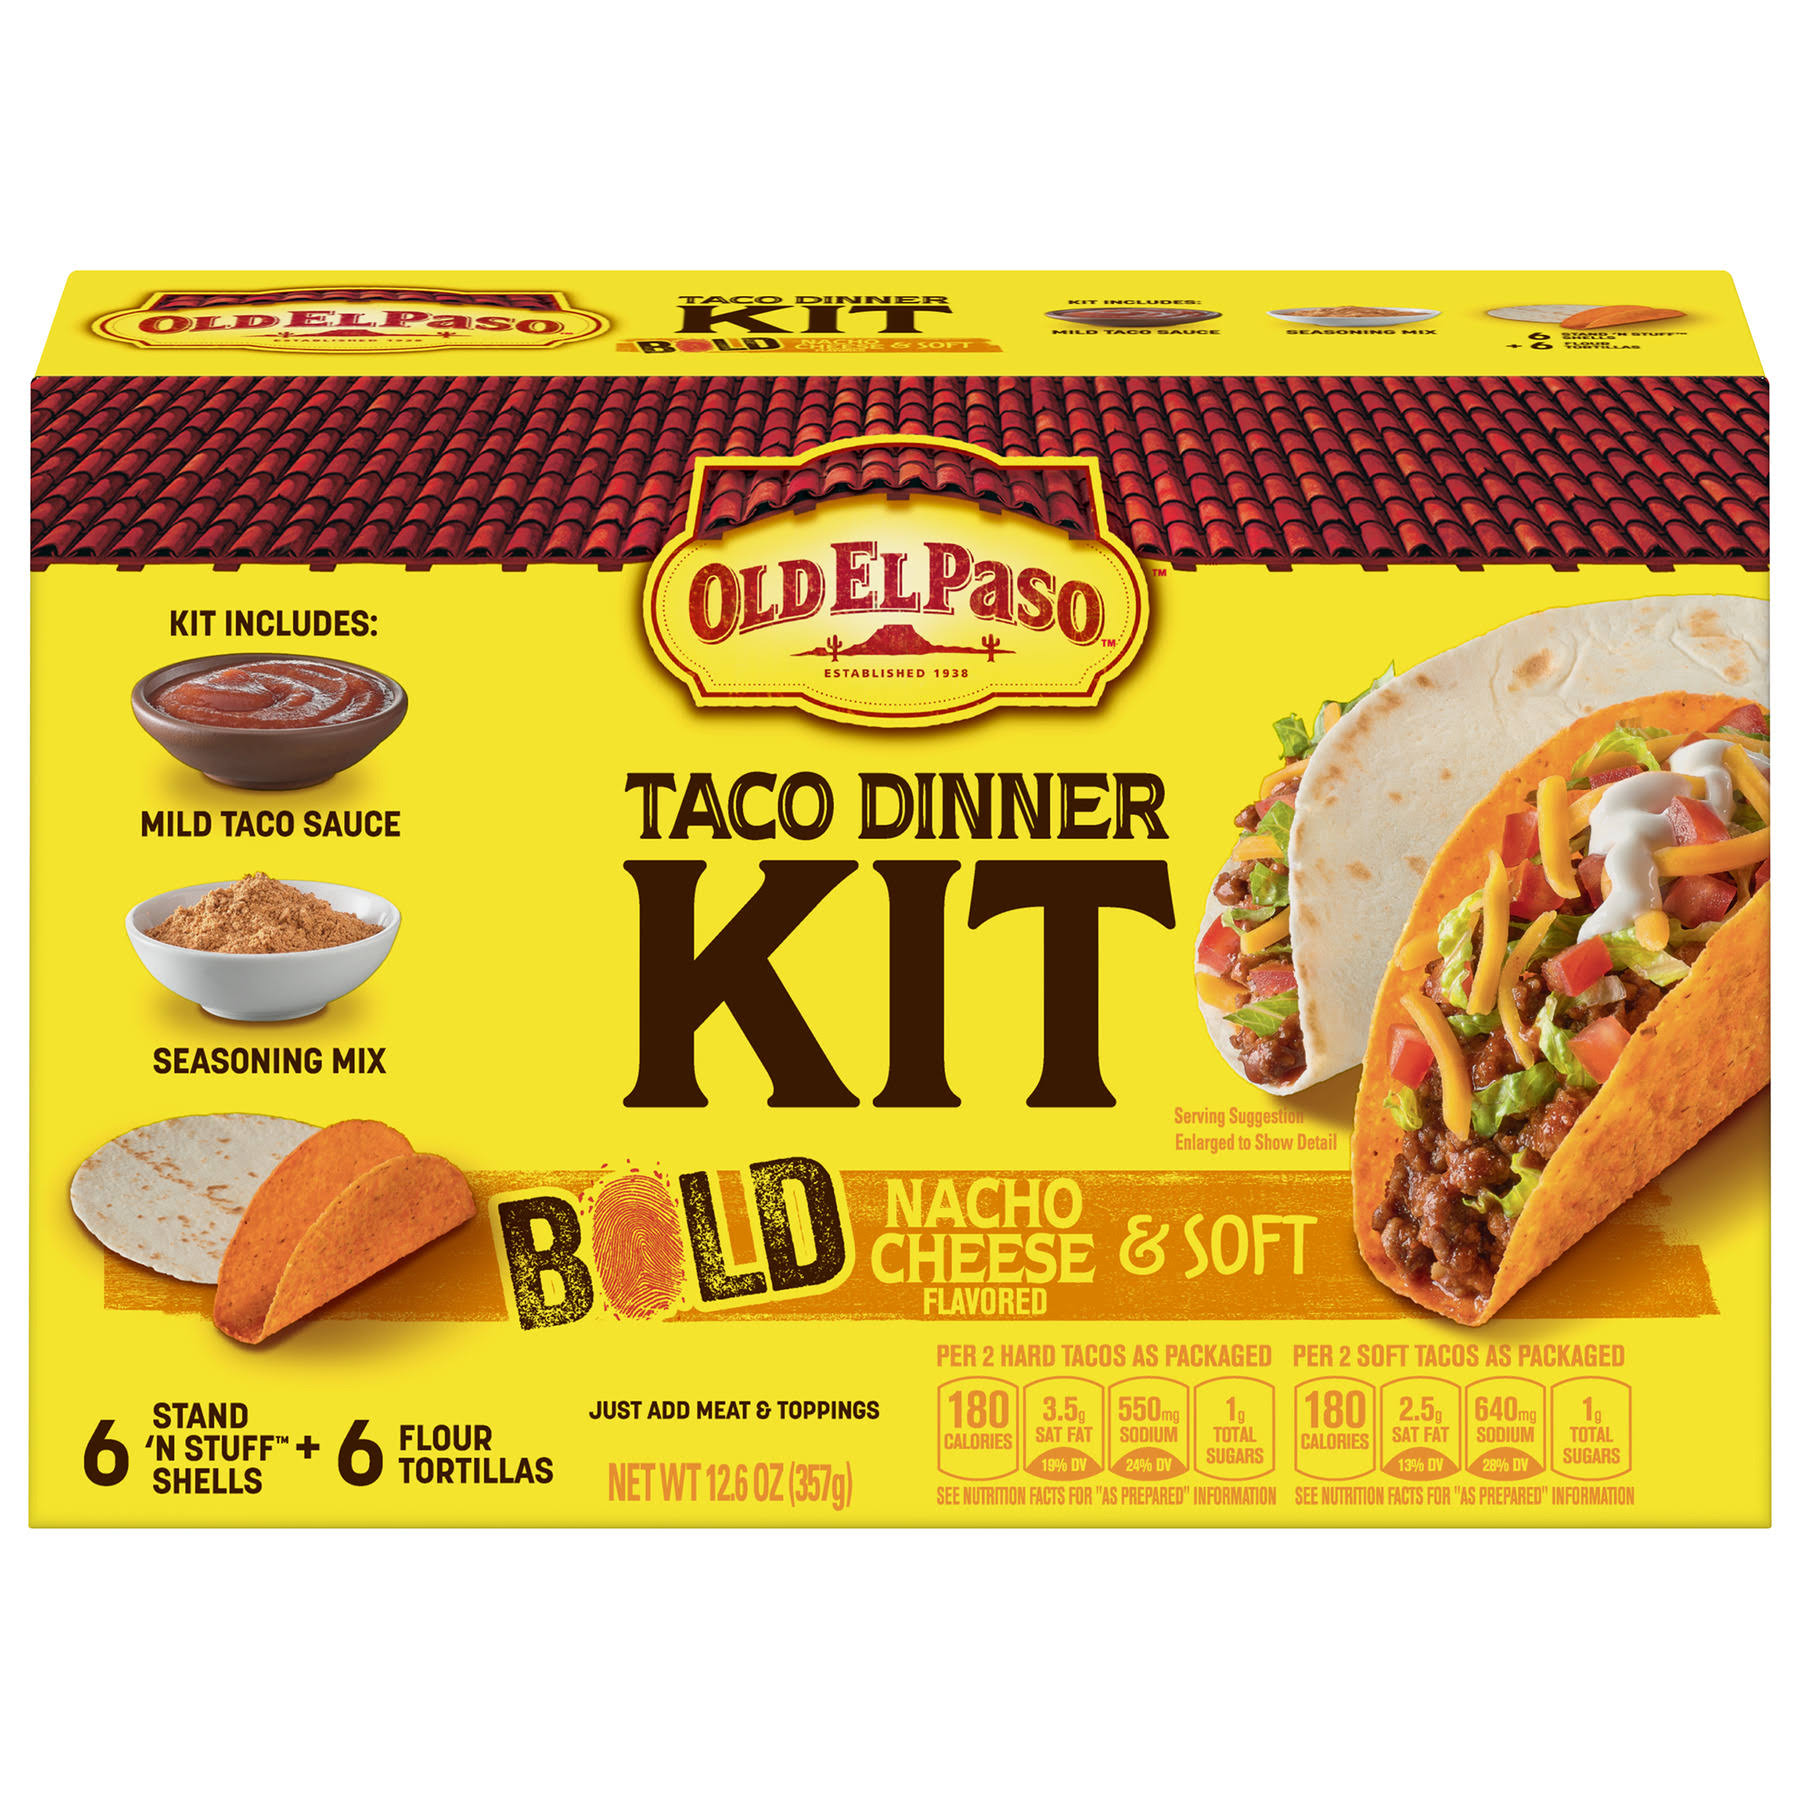 Old El Paso Taco Dinner Kit, Bold & Soft - 1 kit, 12.6 oz